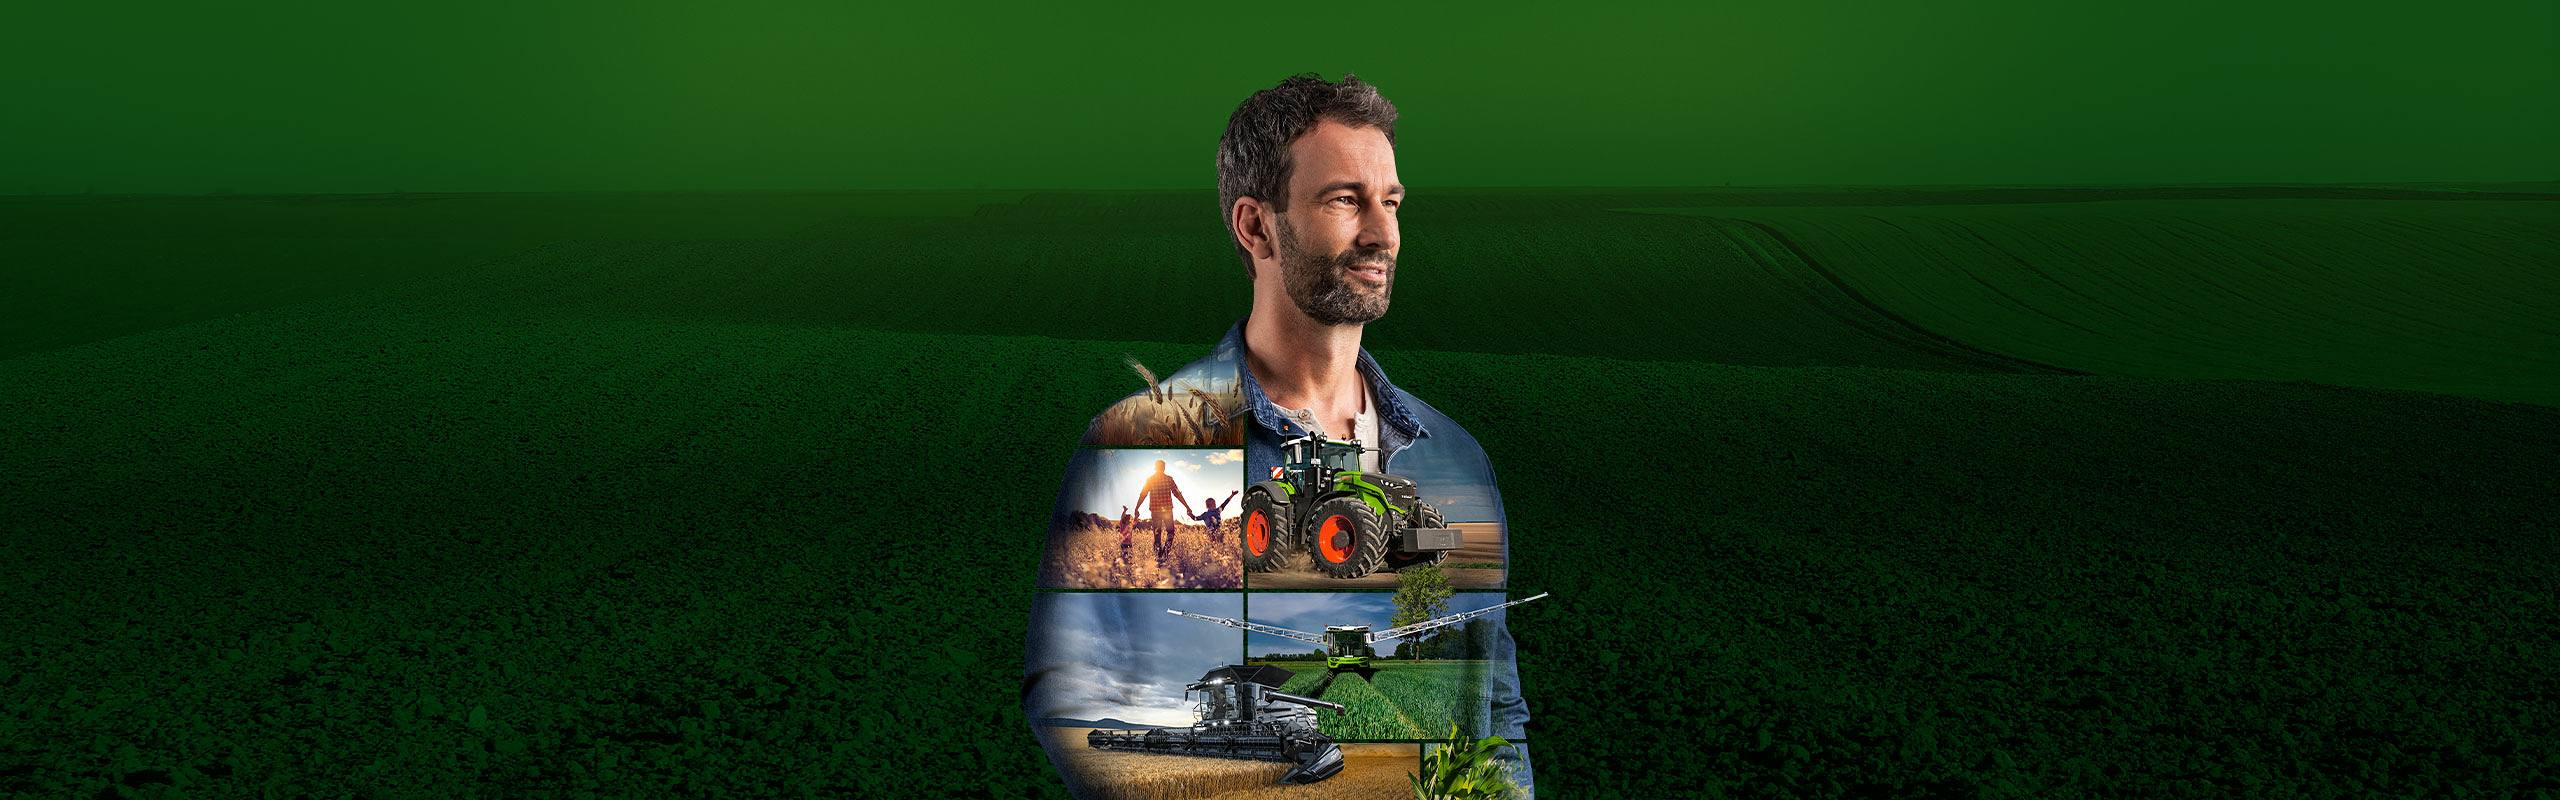 Un agricultor está ante un fondo verde y mira motivado hacia el futuro. En su parte superior hay productos Fendt ilustrados.